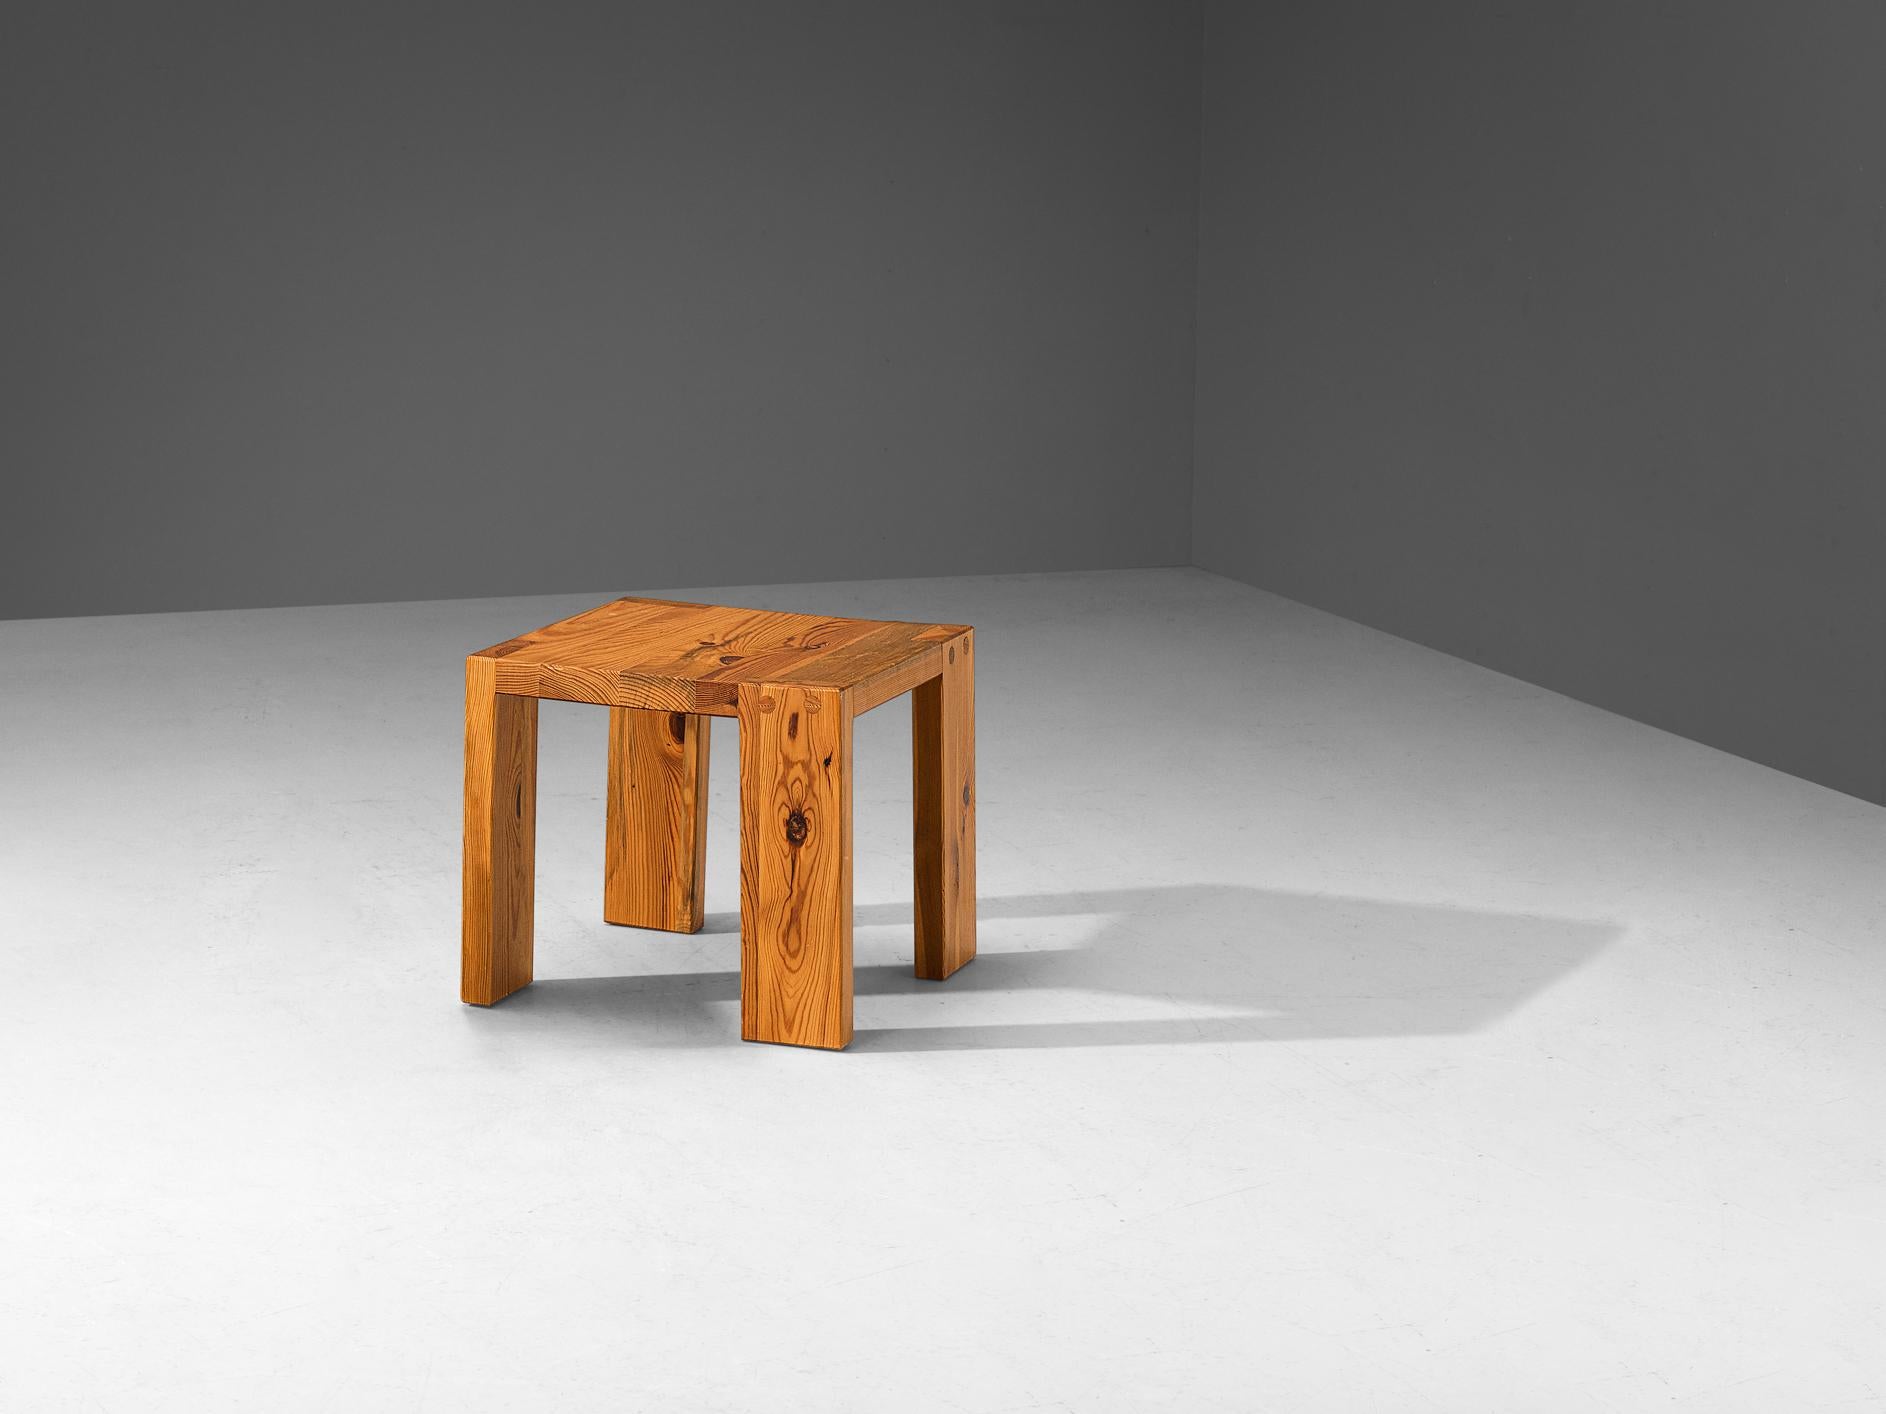 Sven Larsson, table d'appoint, pin, Suède, années 1970.

Table d'appoint cubiste conçue par le designer suédois Sven Larsson. La particularité de son travail est l'utilisation de bois de pin massif et la menuiserie raffinée qui témoigne de son